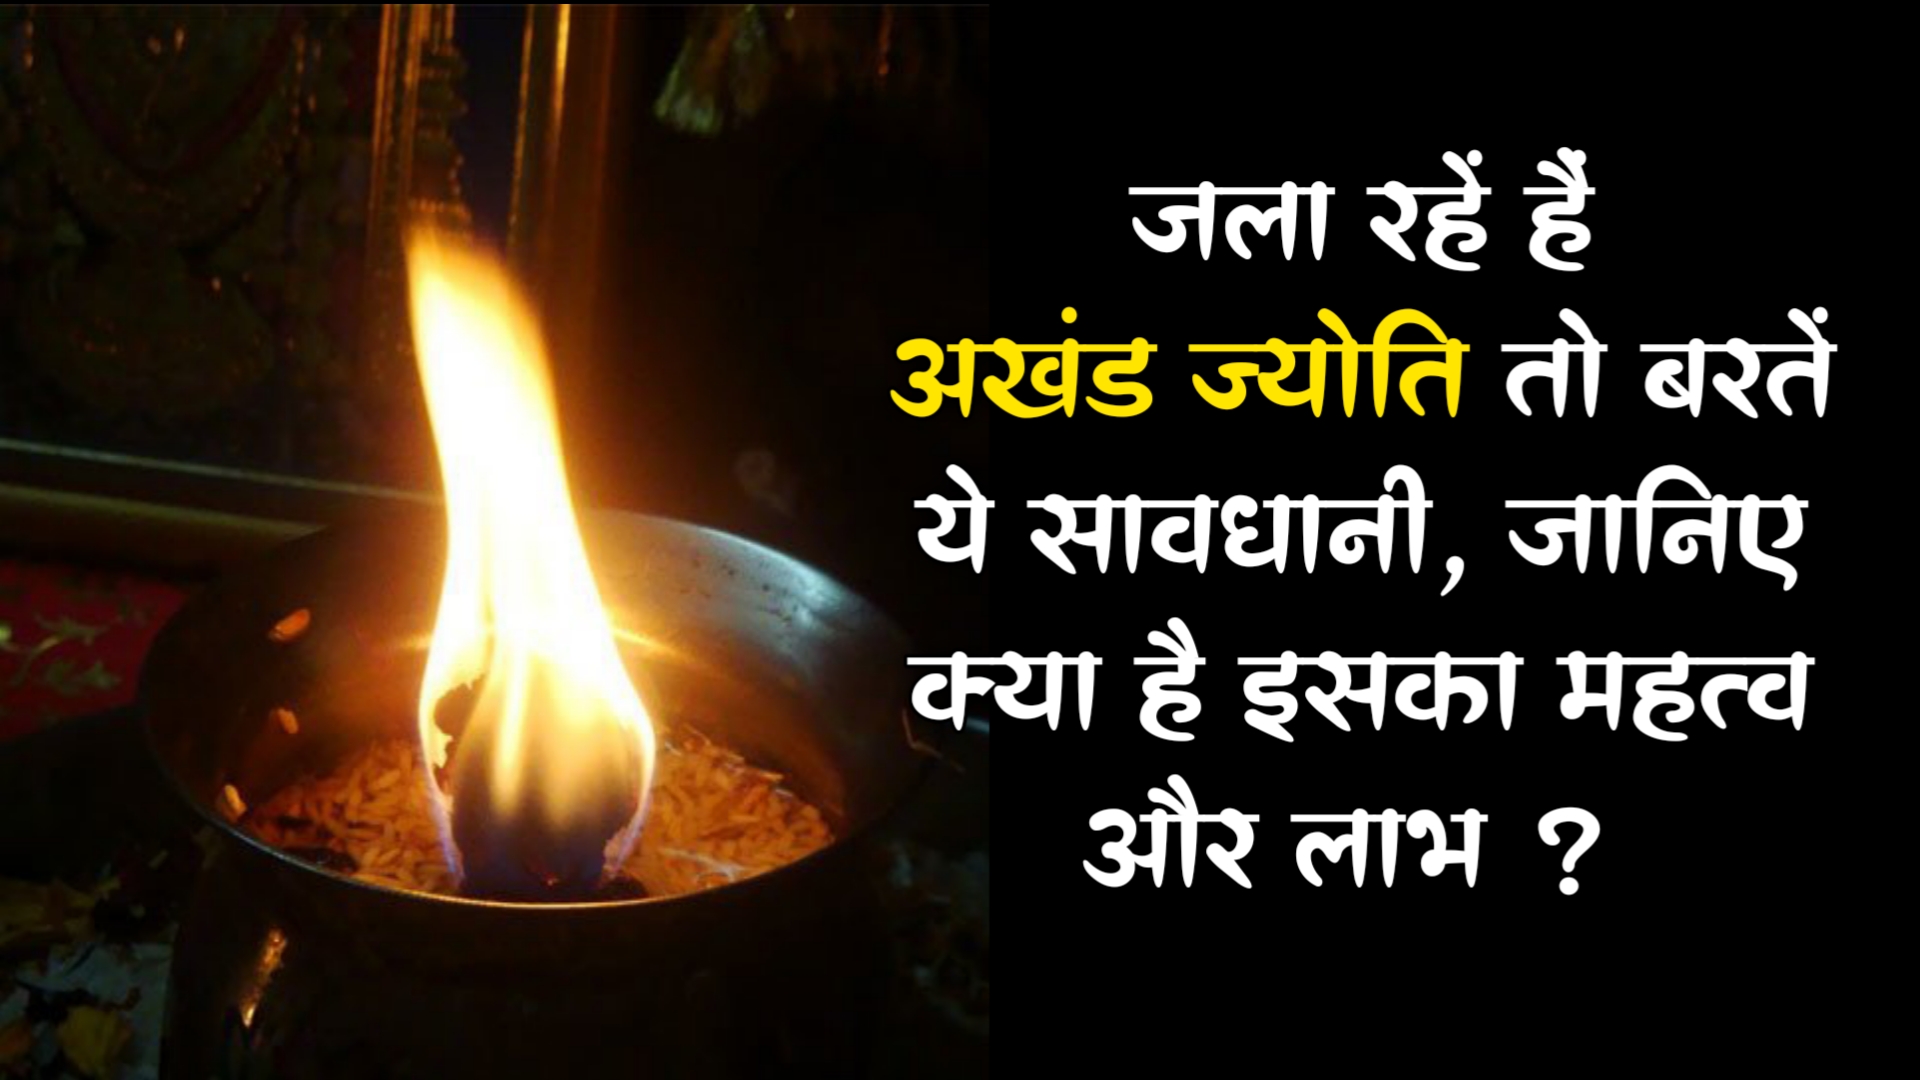 Akhand Jyoti: जला रहें हैं नवरात्रि में अखंड ज्योति तो बरतें ये सावधानी, जानिए क्या है इसका महत्व और लाभ ?